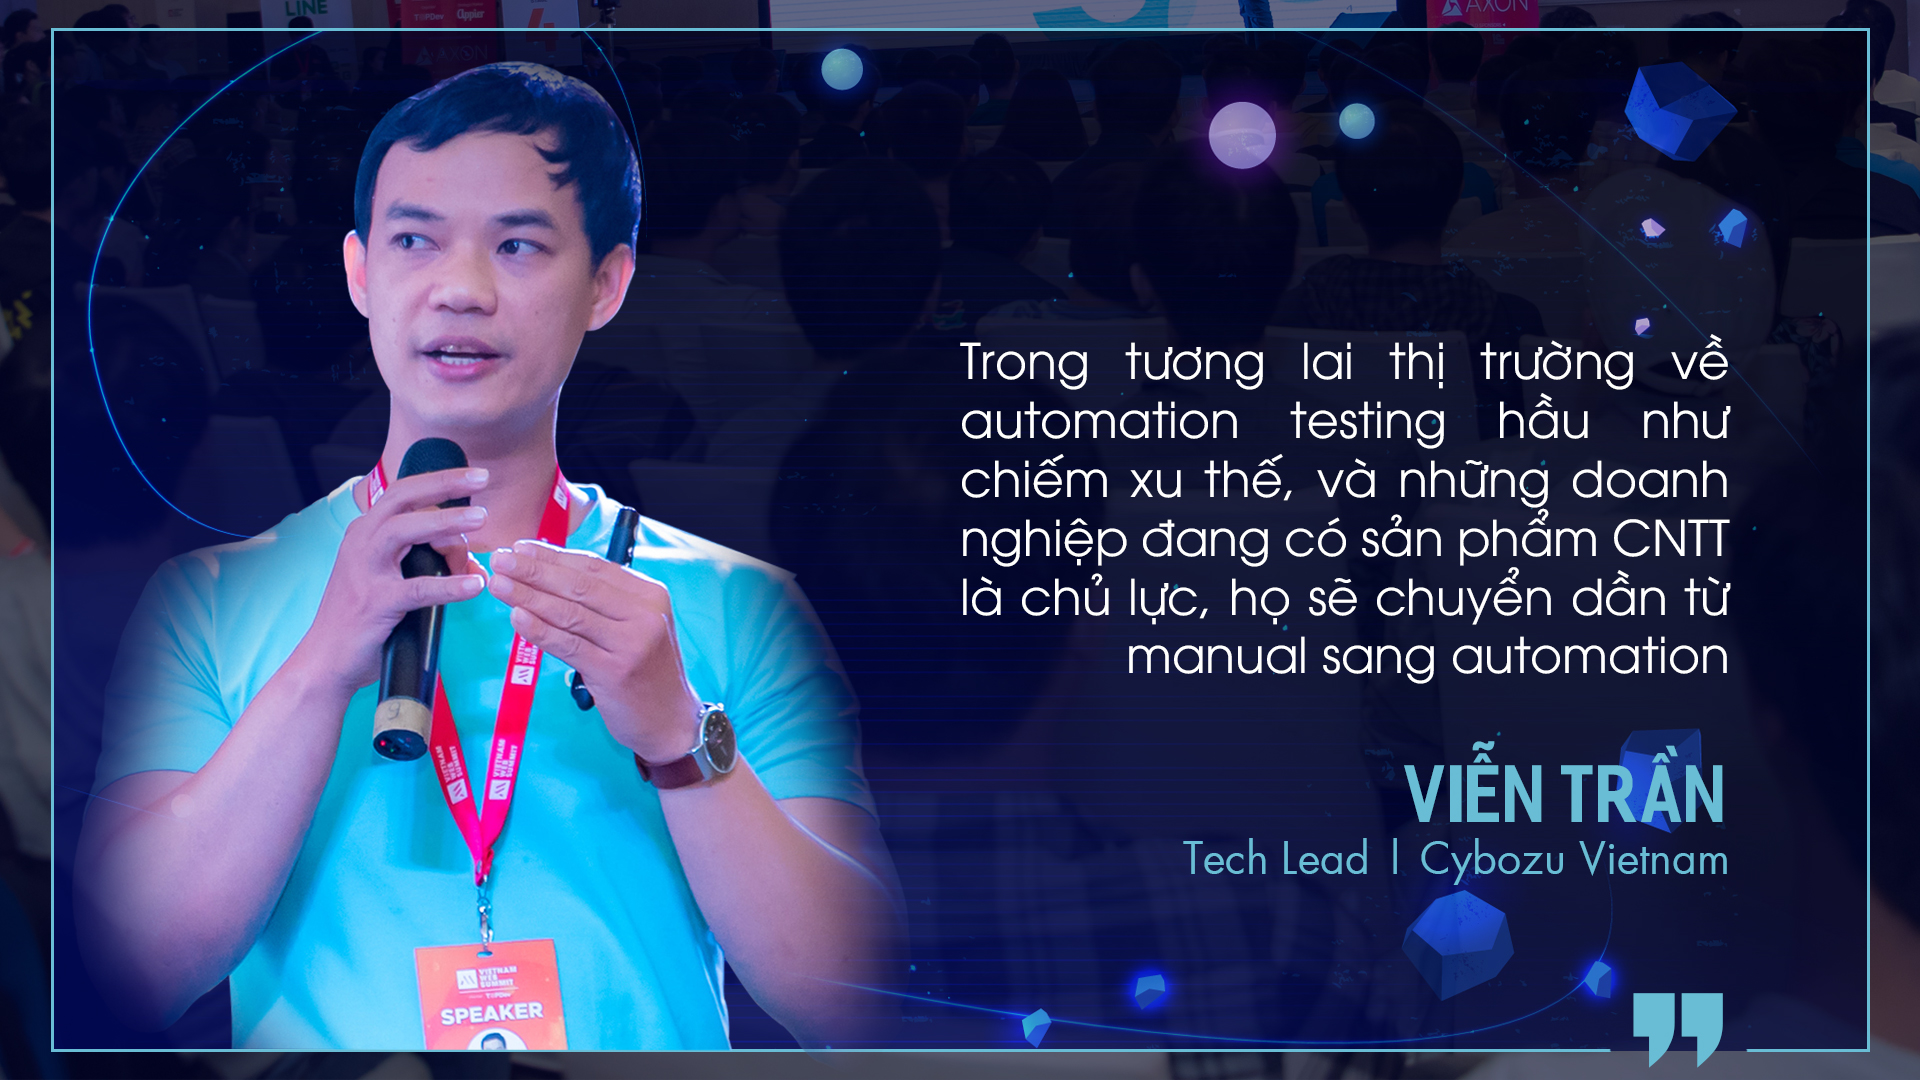 Viễn Trần - Tech Lead tại CYBOZU Việt Nam